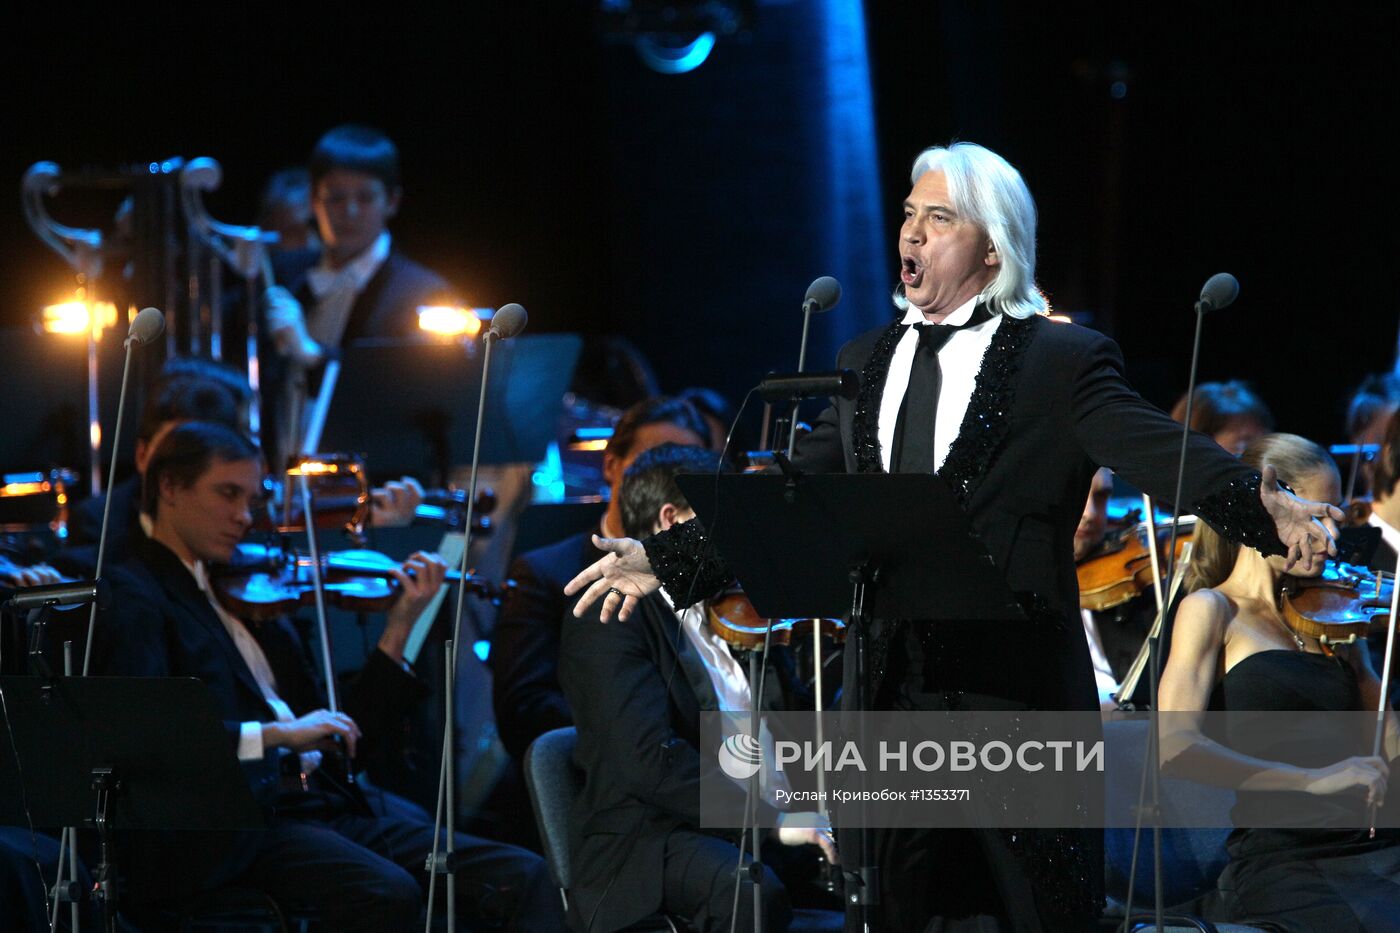 Юбилейный концерт в честь 50-летия Дмитрия Хворостовского